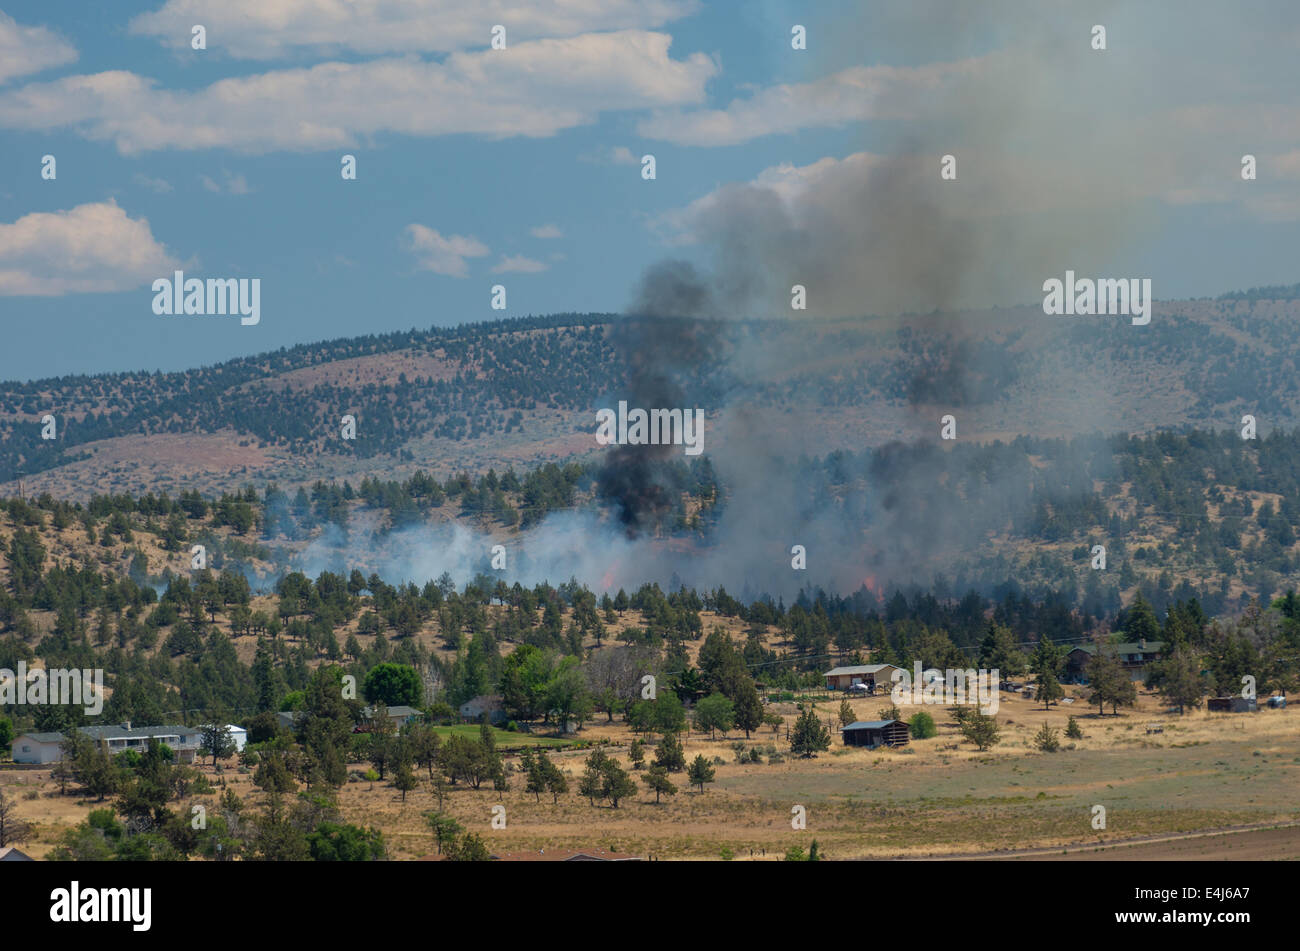 MADRAS, OREGON, Aprile 12th, 2014. Un wildfire erutta fiamme in prossimità di abitazioni e annessi appena fuori la città di Madras, Oregon nel centro di Oregon. Foto Stock